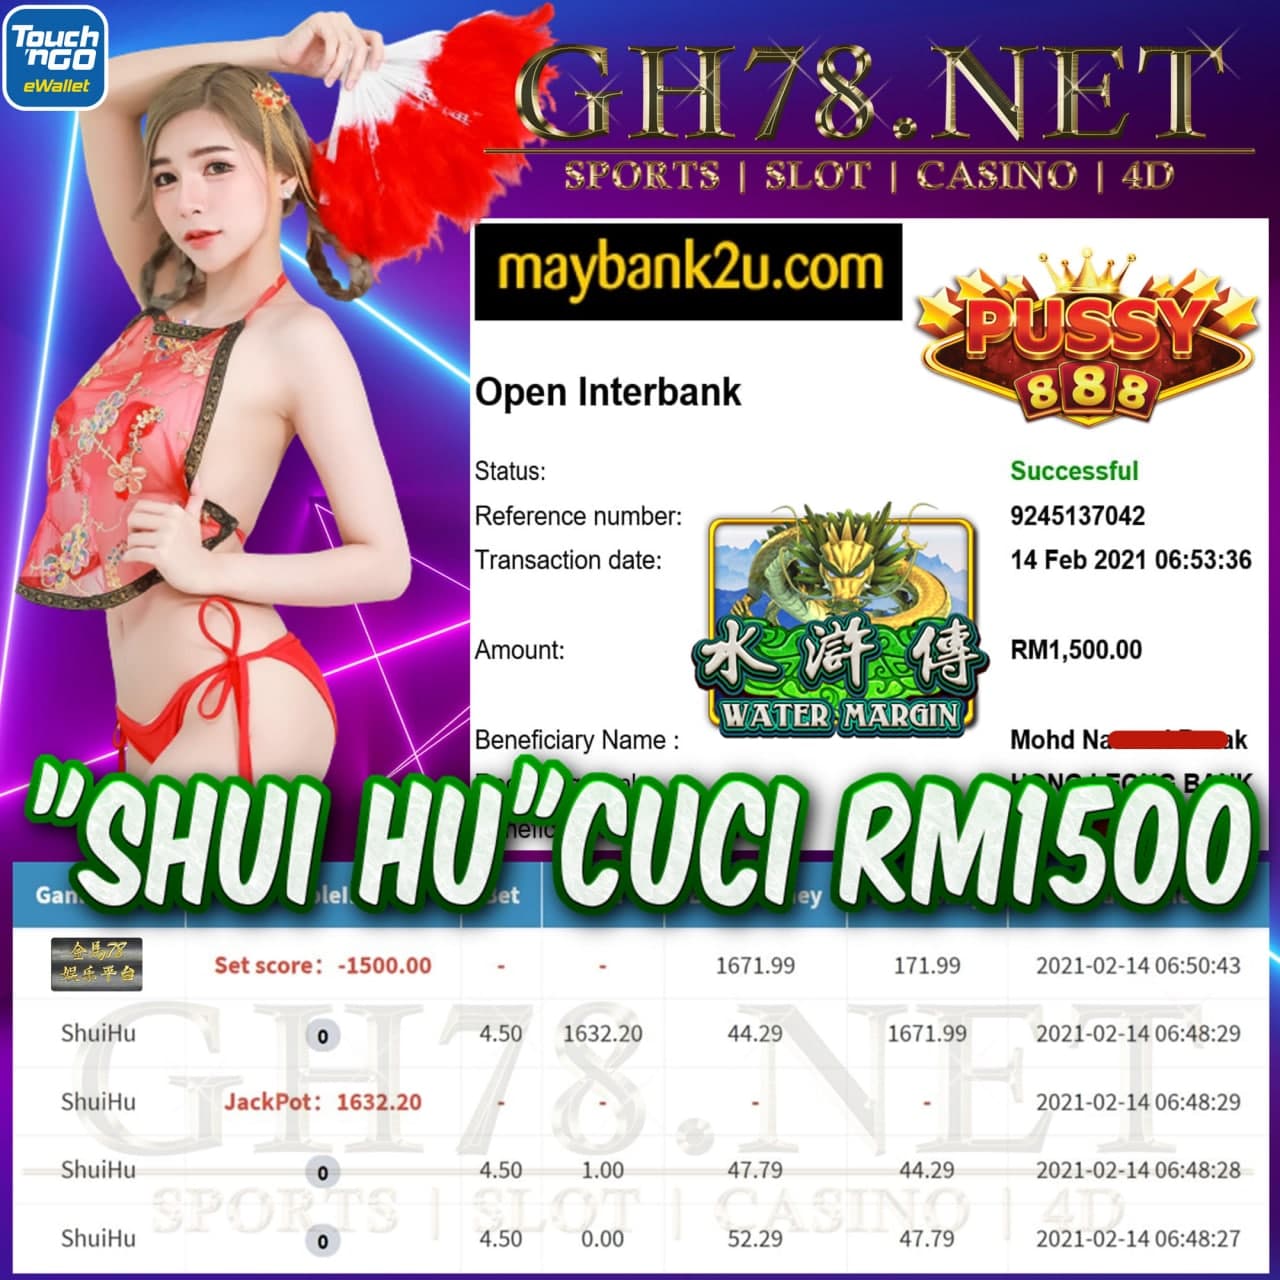 PUSSY888 SHUI HU CUCI RM1500